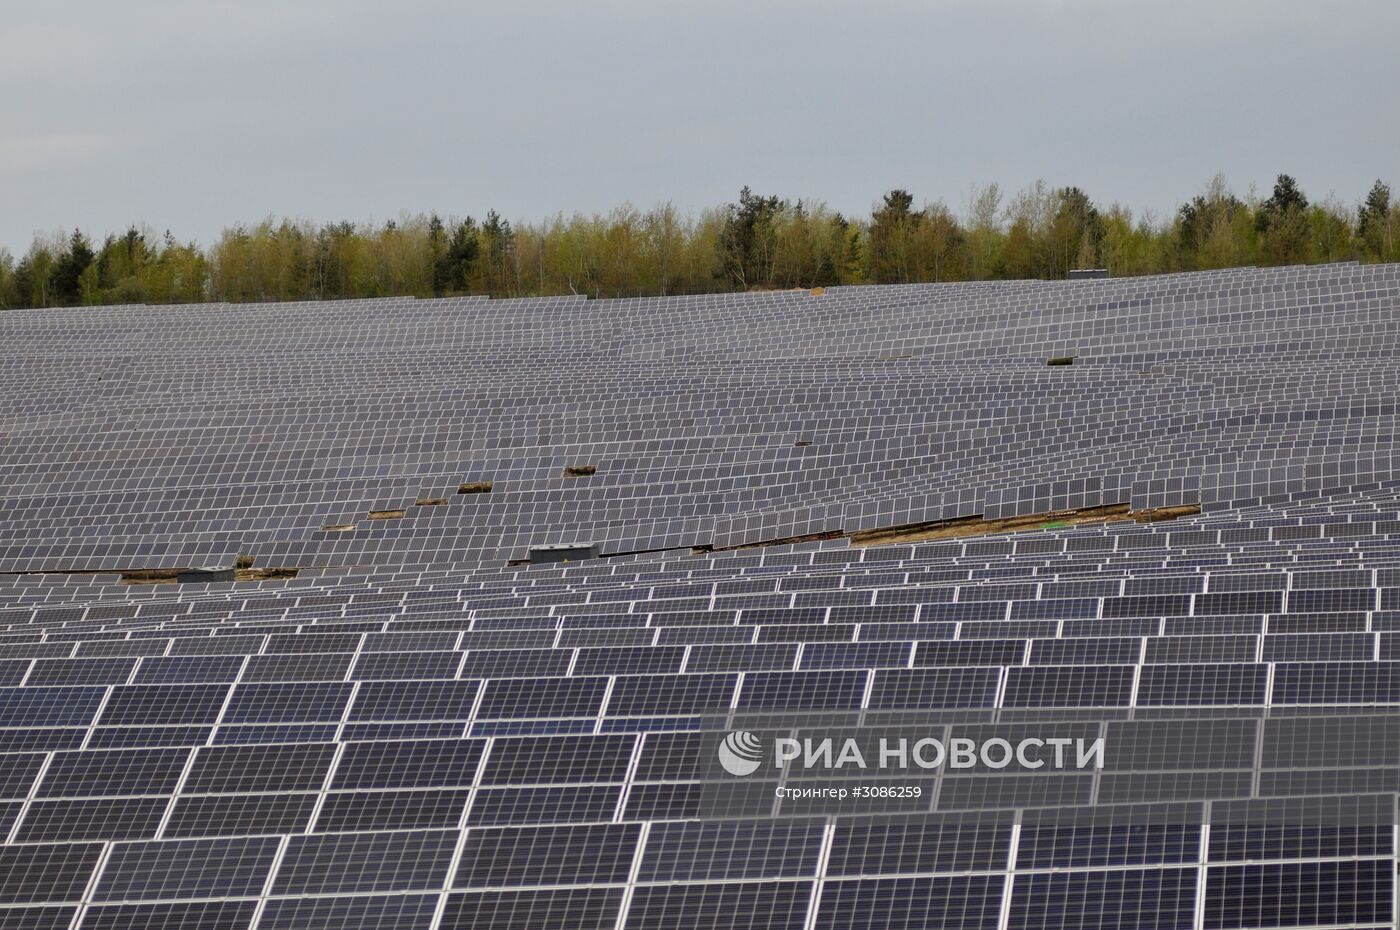 Солнечная фотоэлектрическая станция во Львовской области